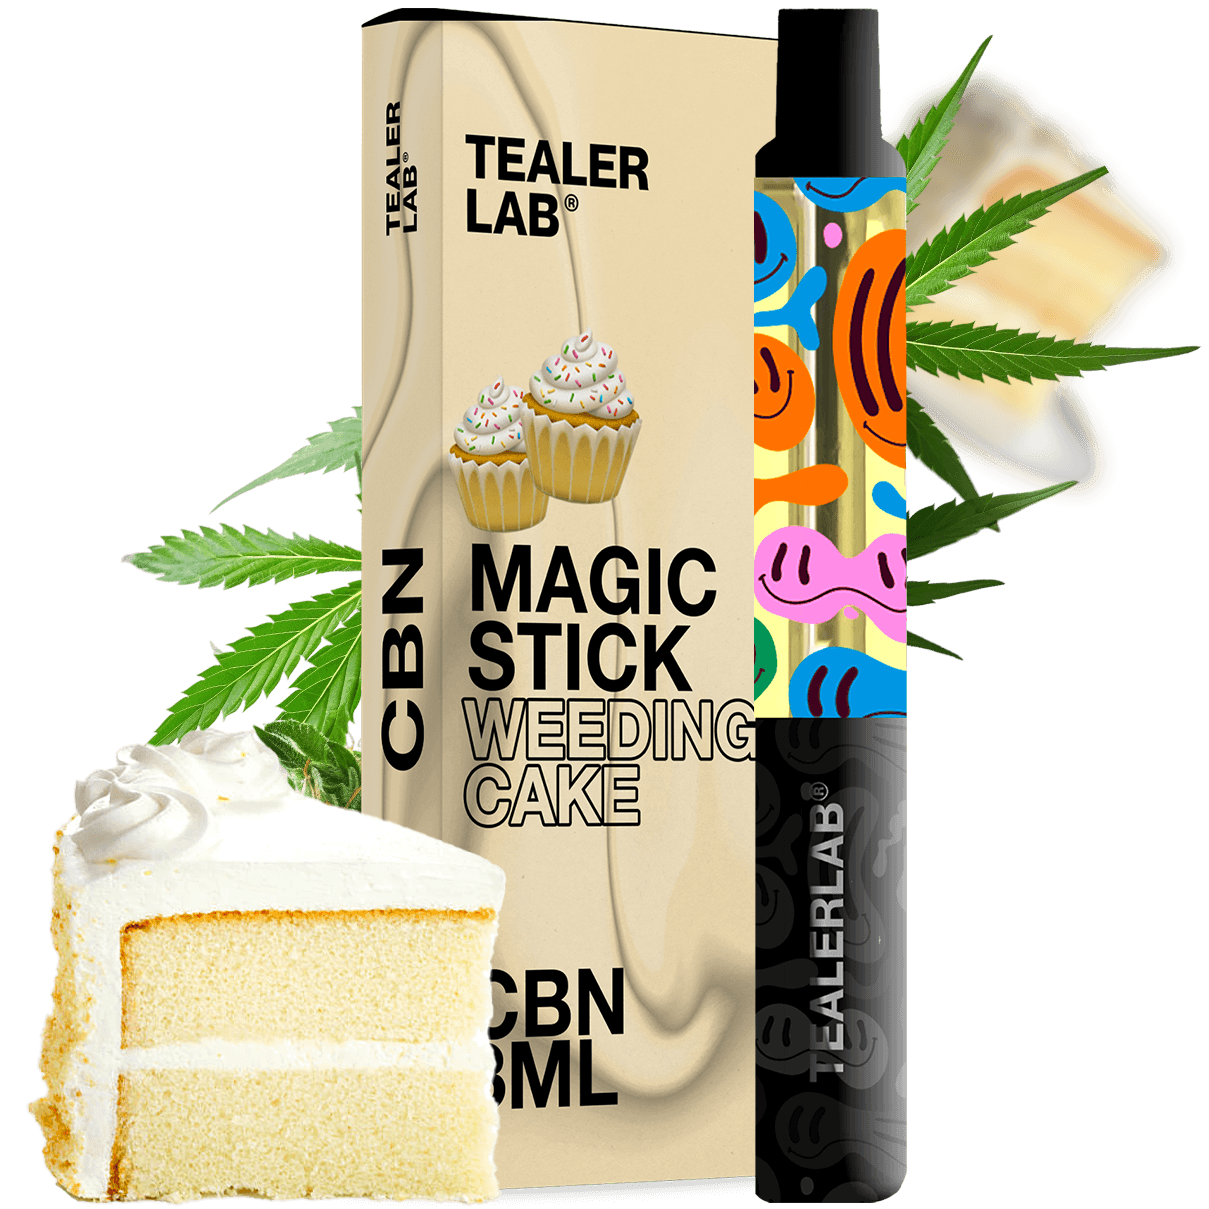 Magic Stick CBN 3ML Weeding Cake